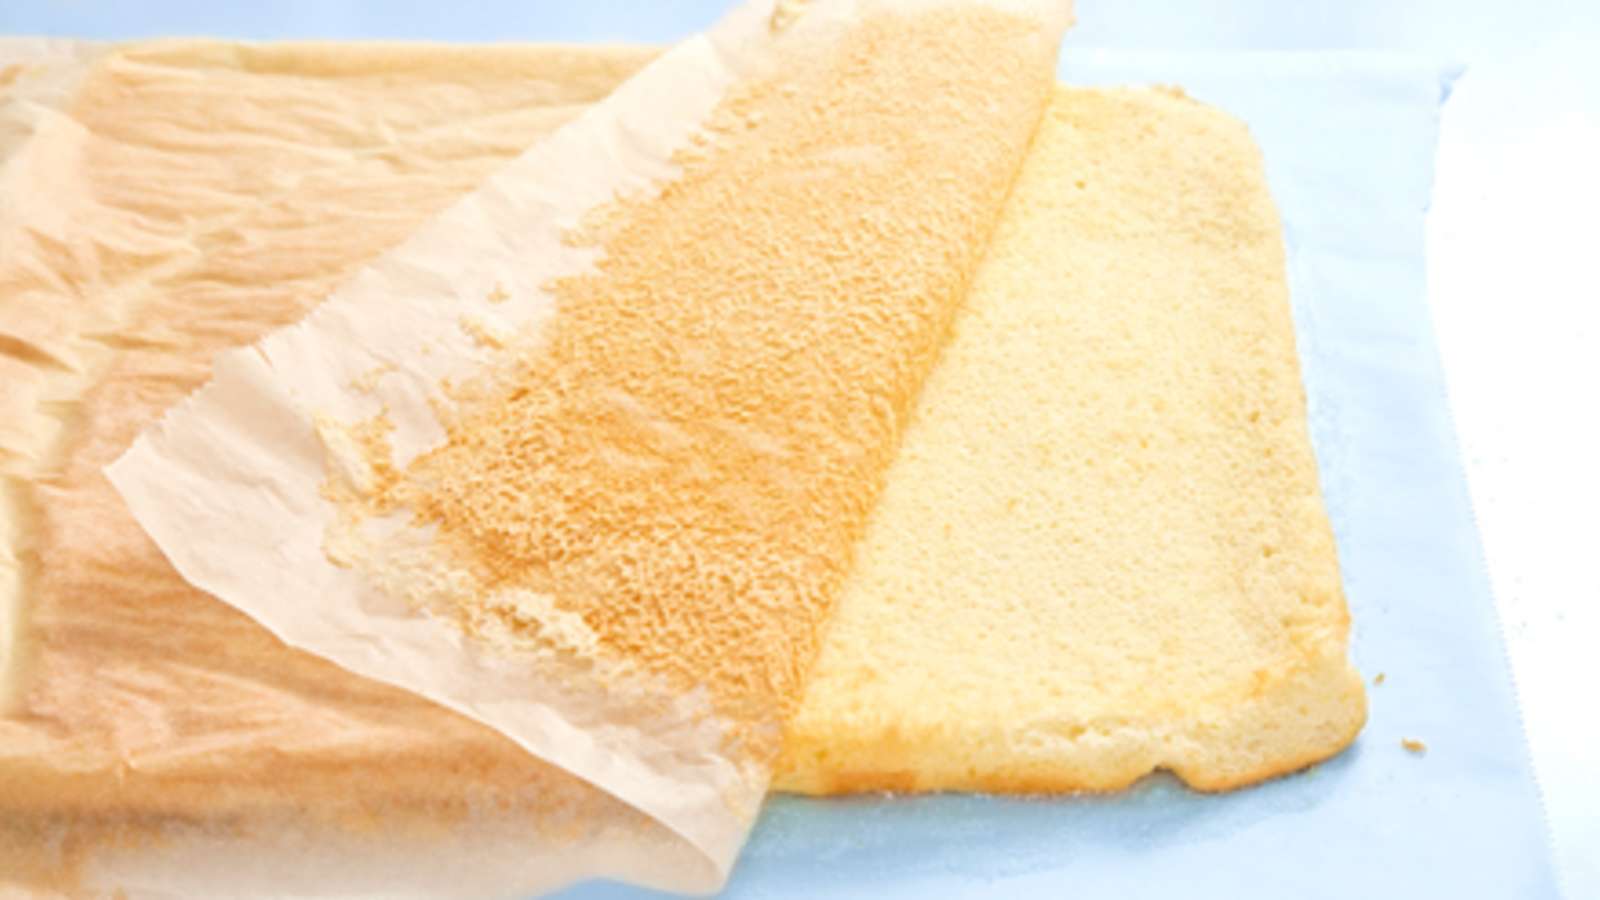 Kumoa torttulevy sokeroidulle leivinpaperille. Irrota pohjapaperi ja anna torttulevyn jäähtyä.